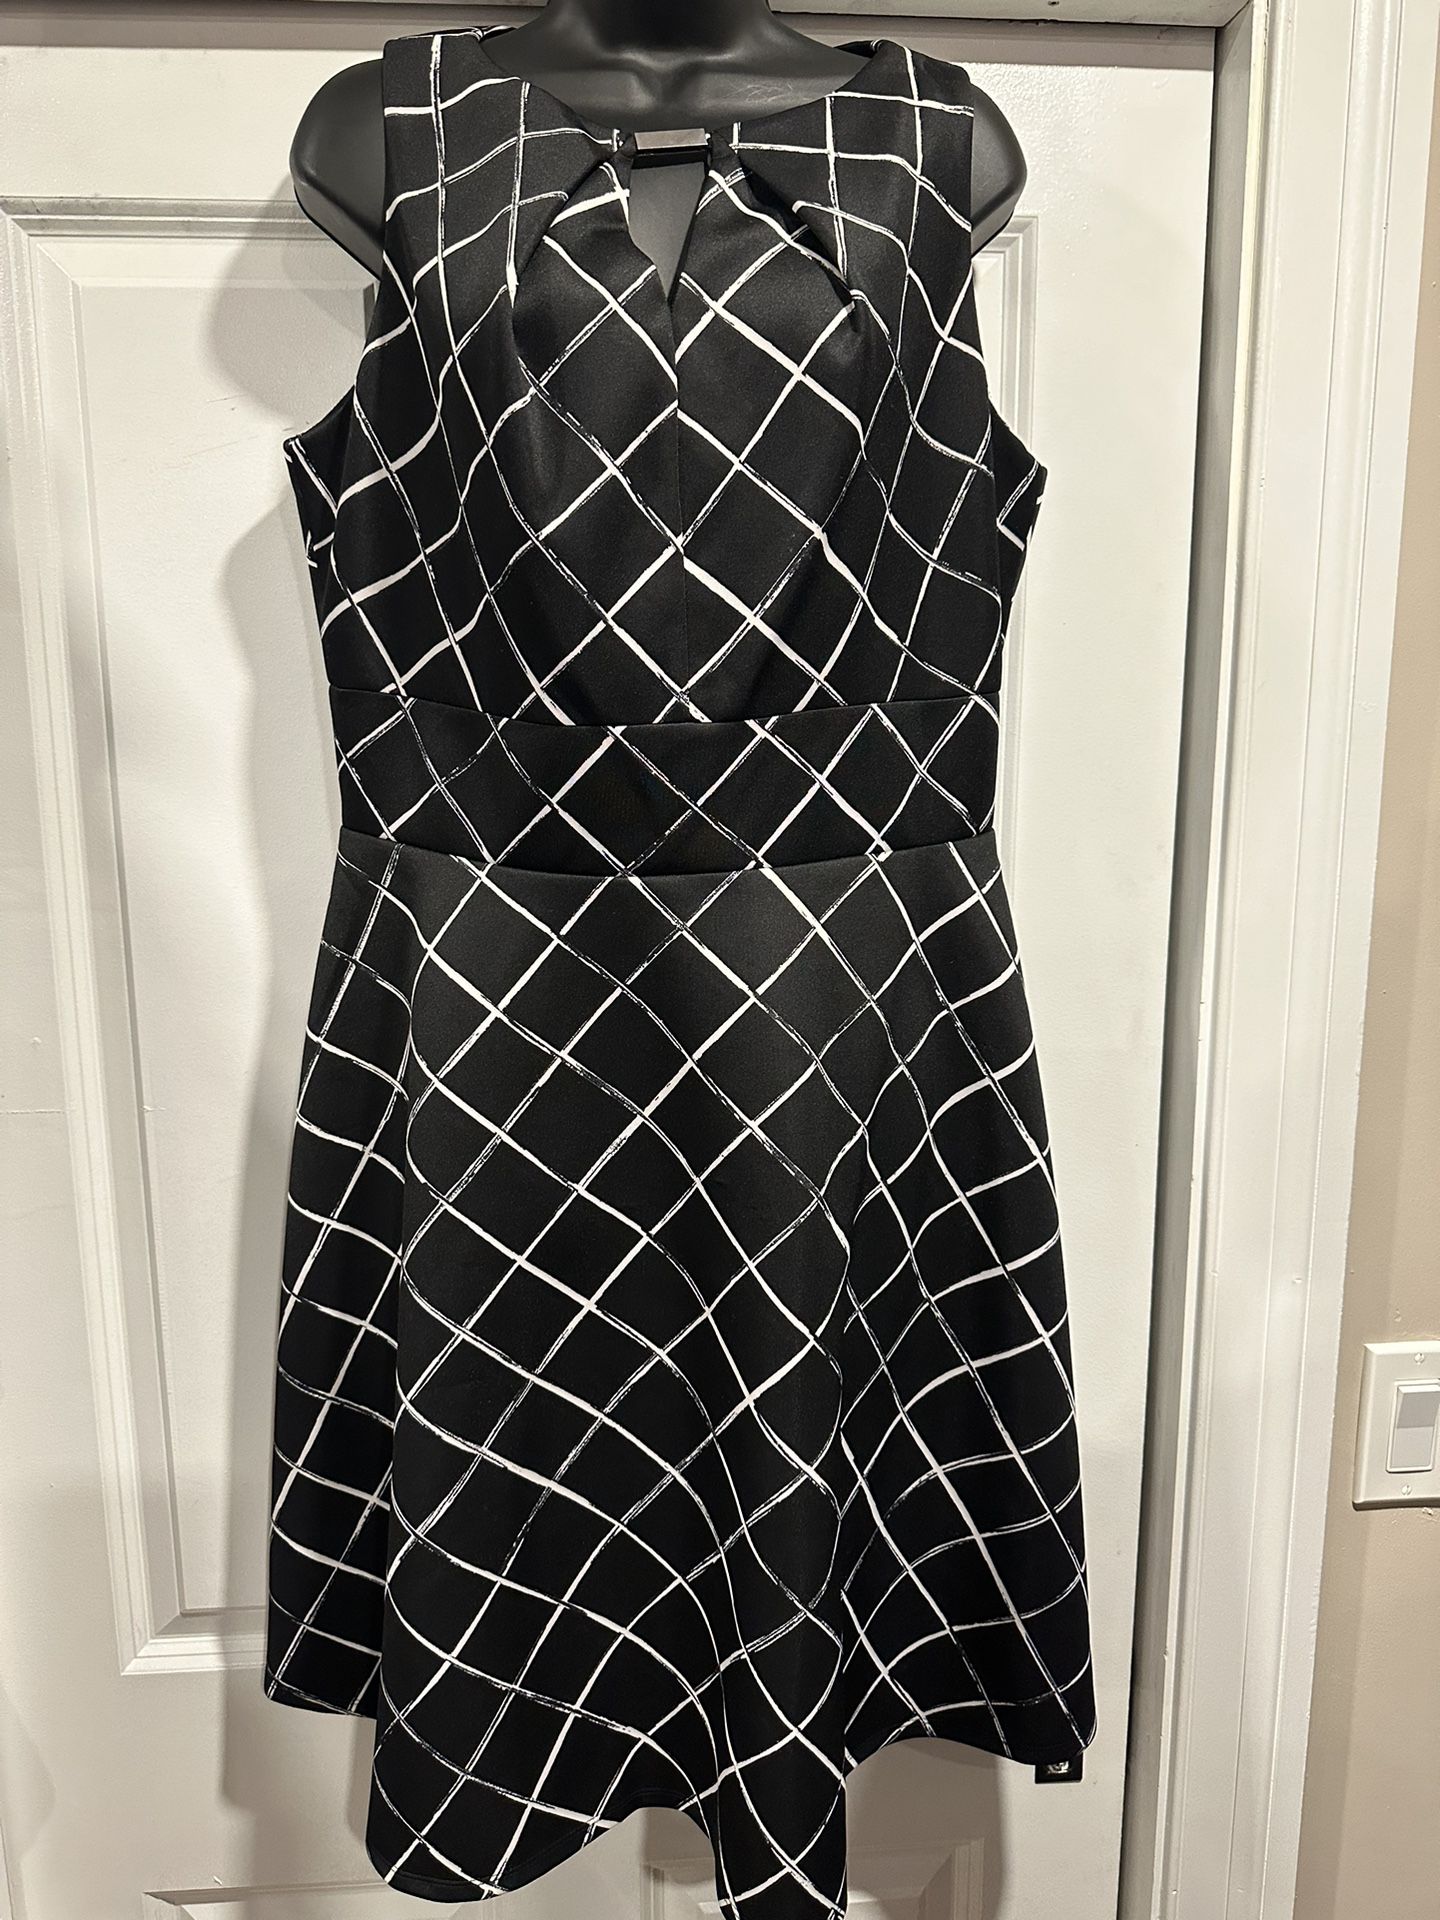 Chic Liz Claiborne Geometric Print Dress - Size 14